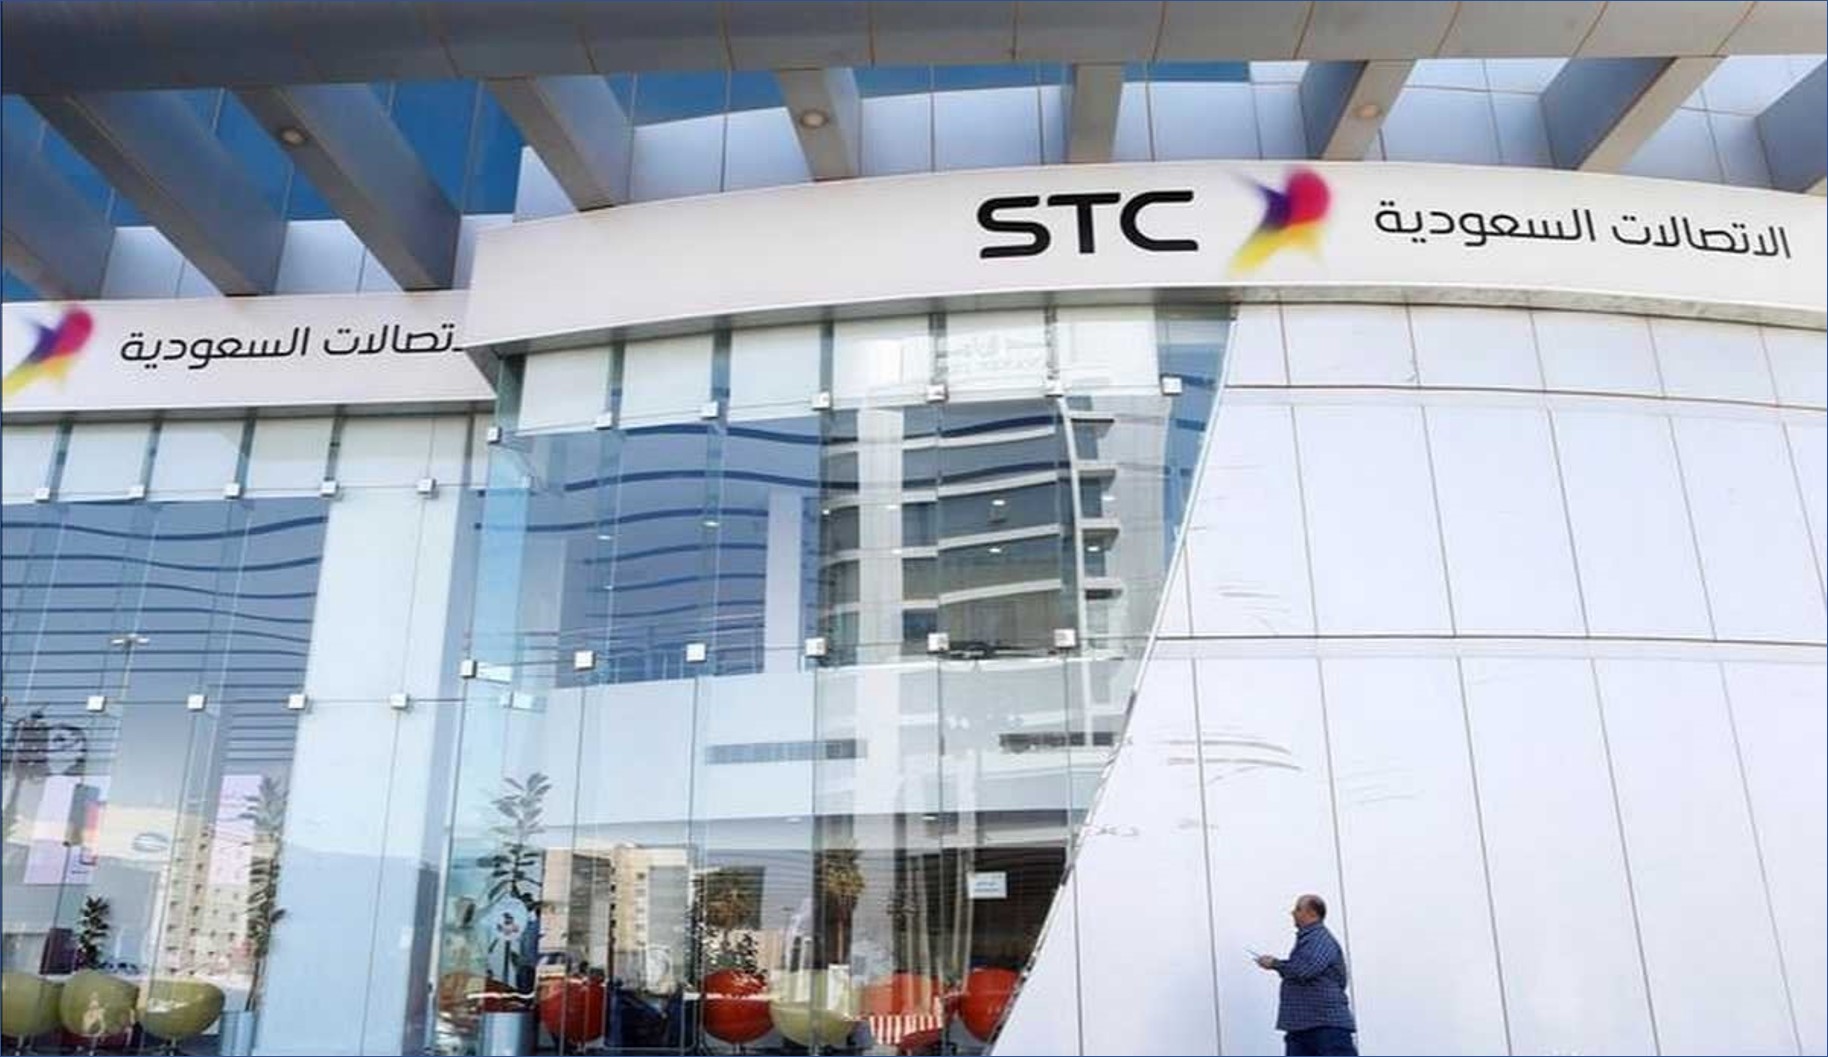 شركة STC تعلن عن فتح باب التوظيف لحديثي التخرج